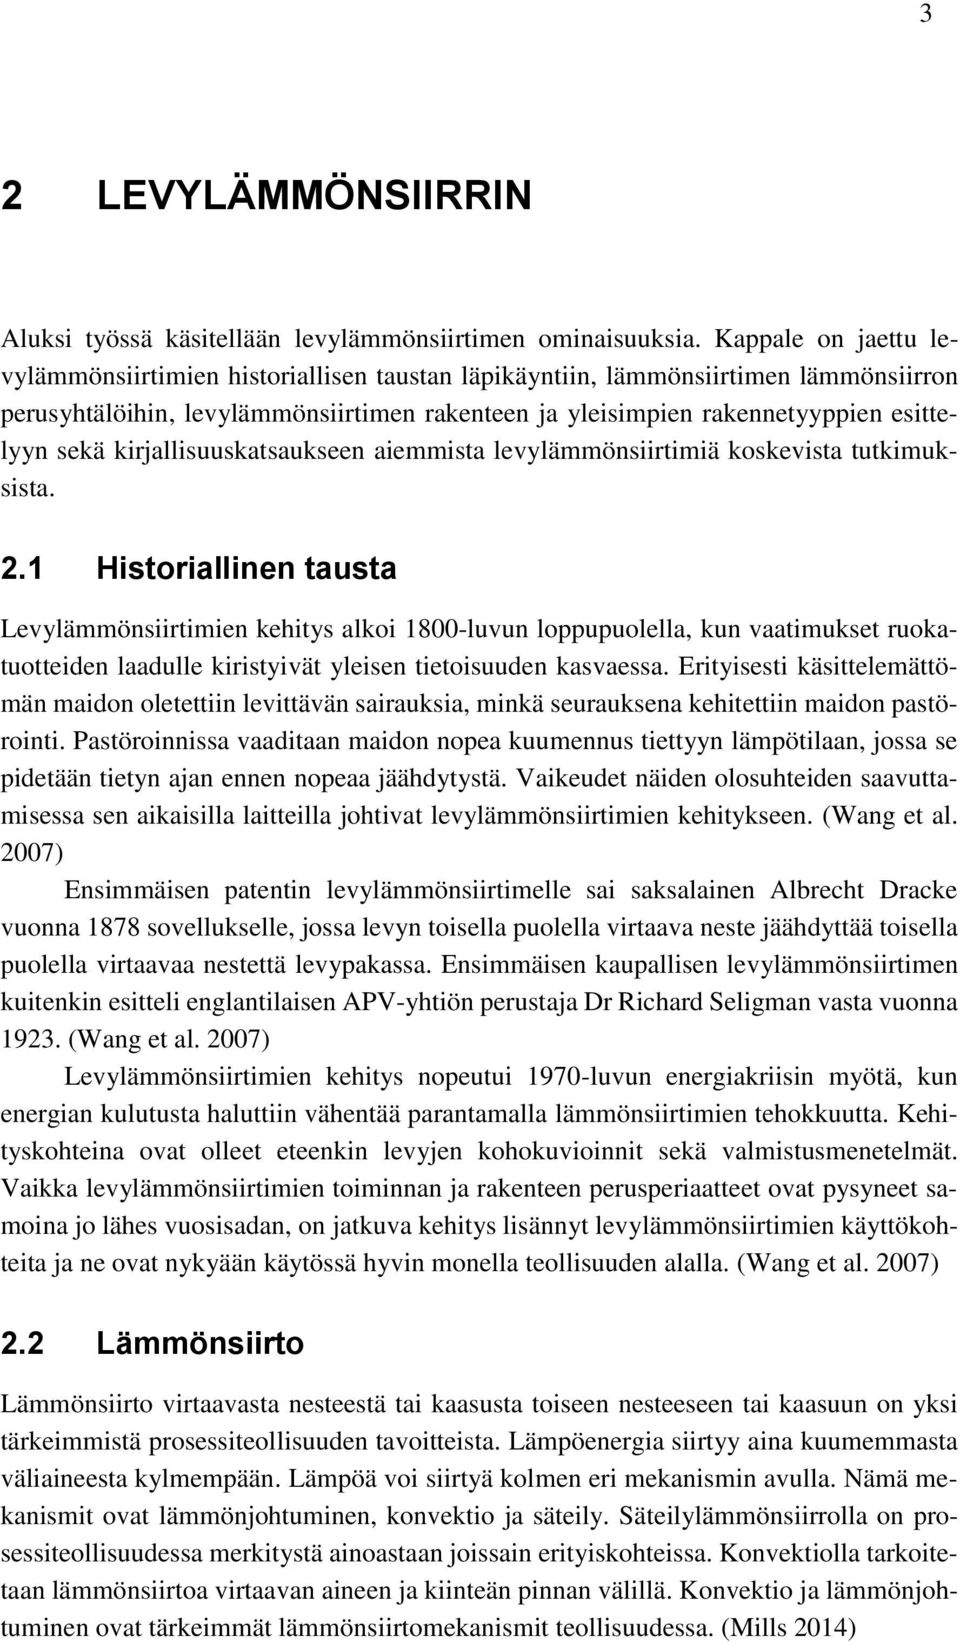 kirjallisuuskatsaukseen aiemmista levylämmönsiirtimiä koskevista tutkimuksista. 2.